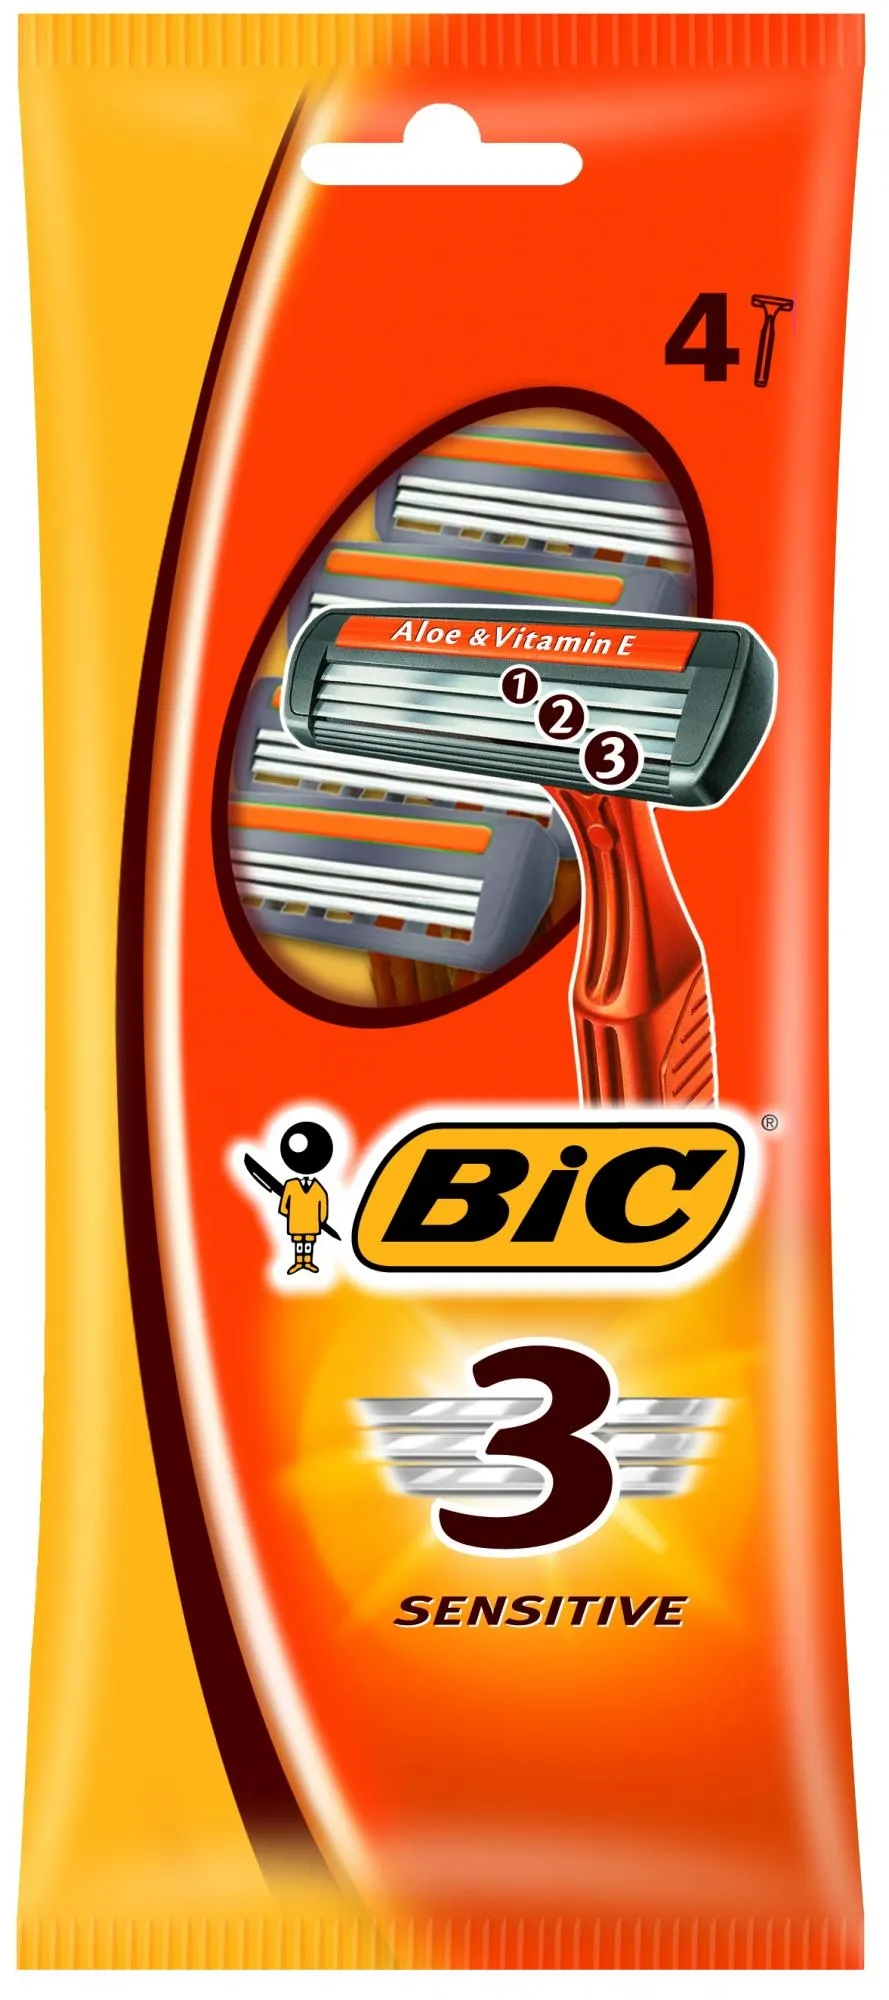 "BIC Sensitive 3lame r&g X 5+1 pz. - Lame e rasoi"